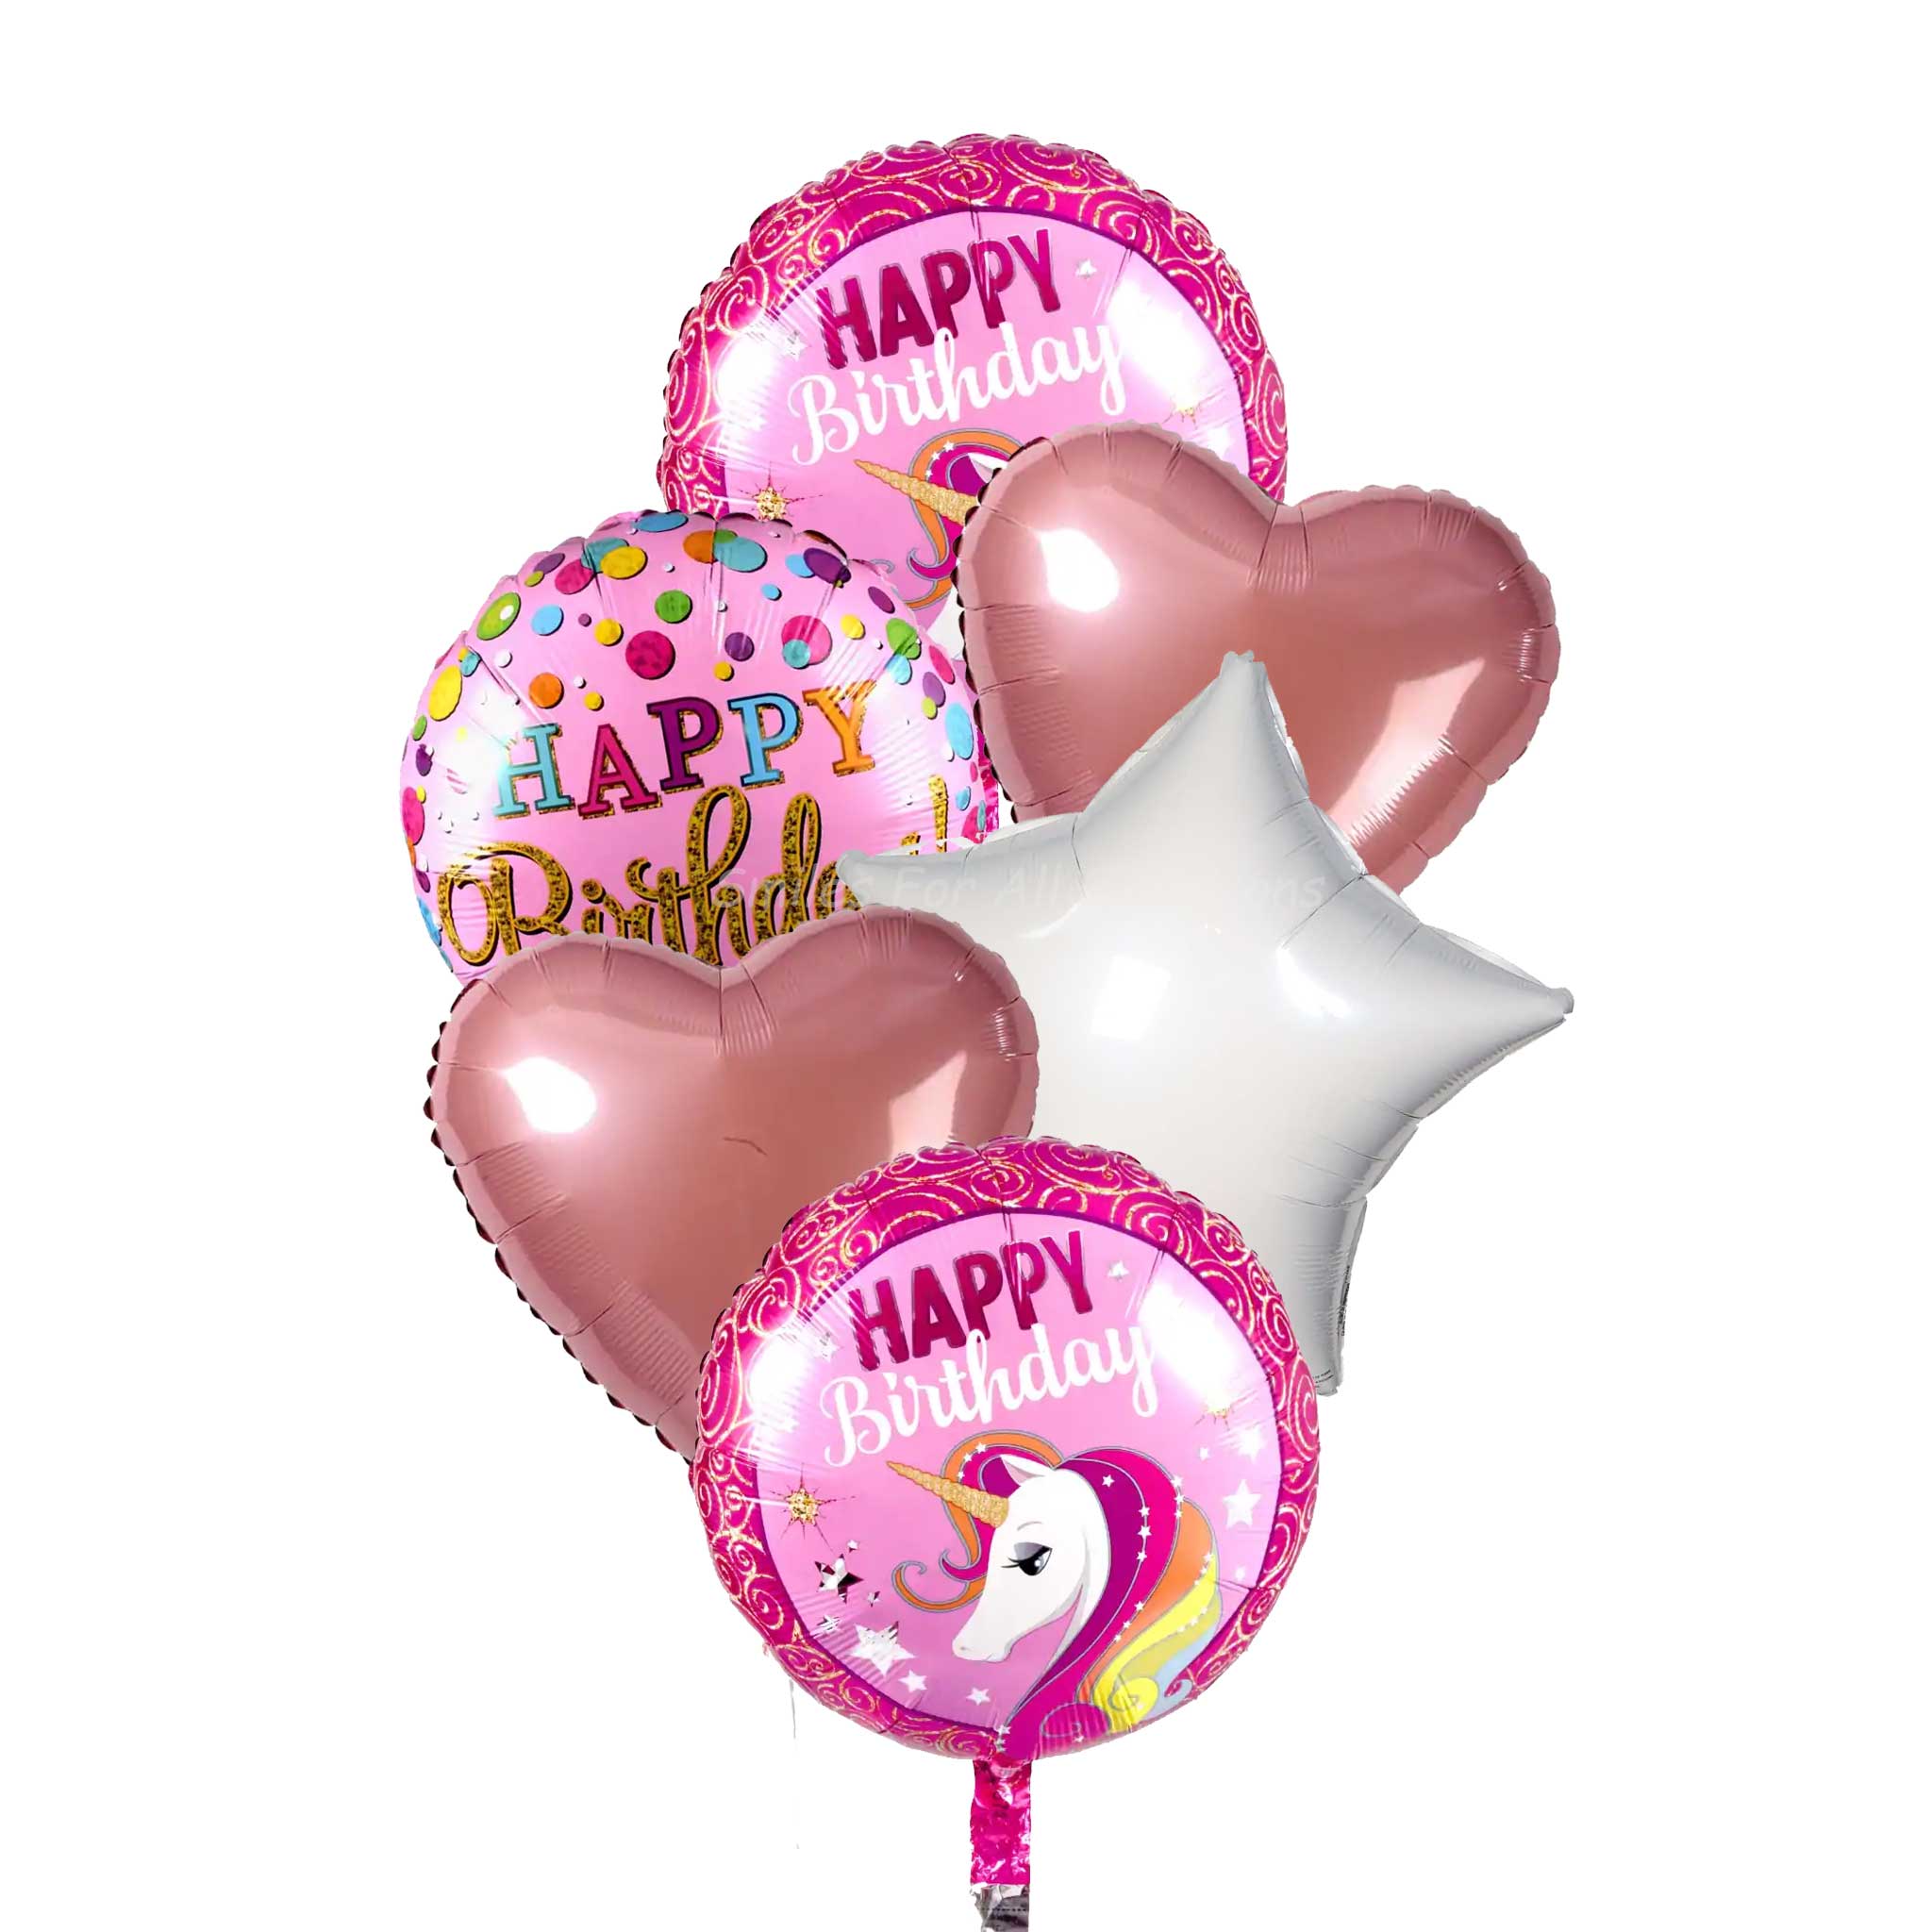 happy birthday heart balloons